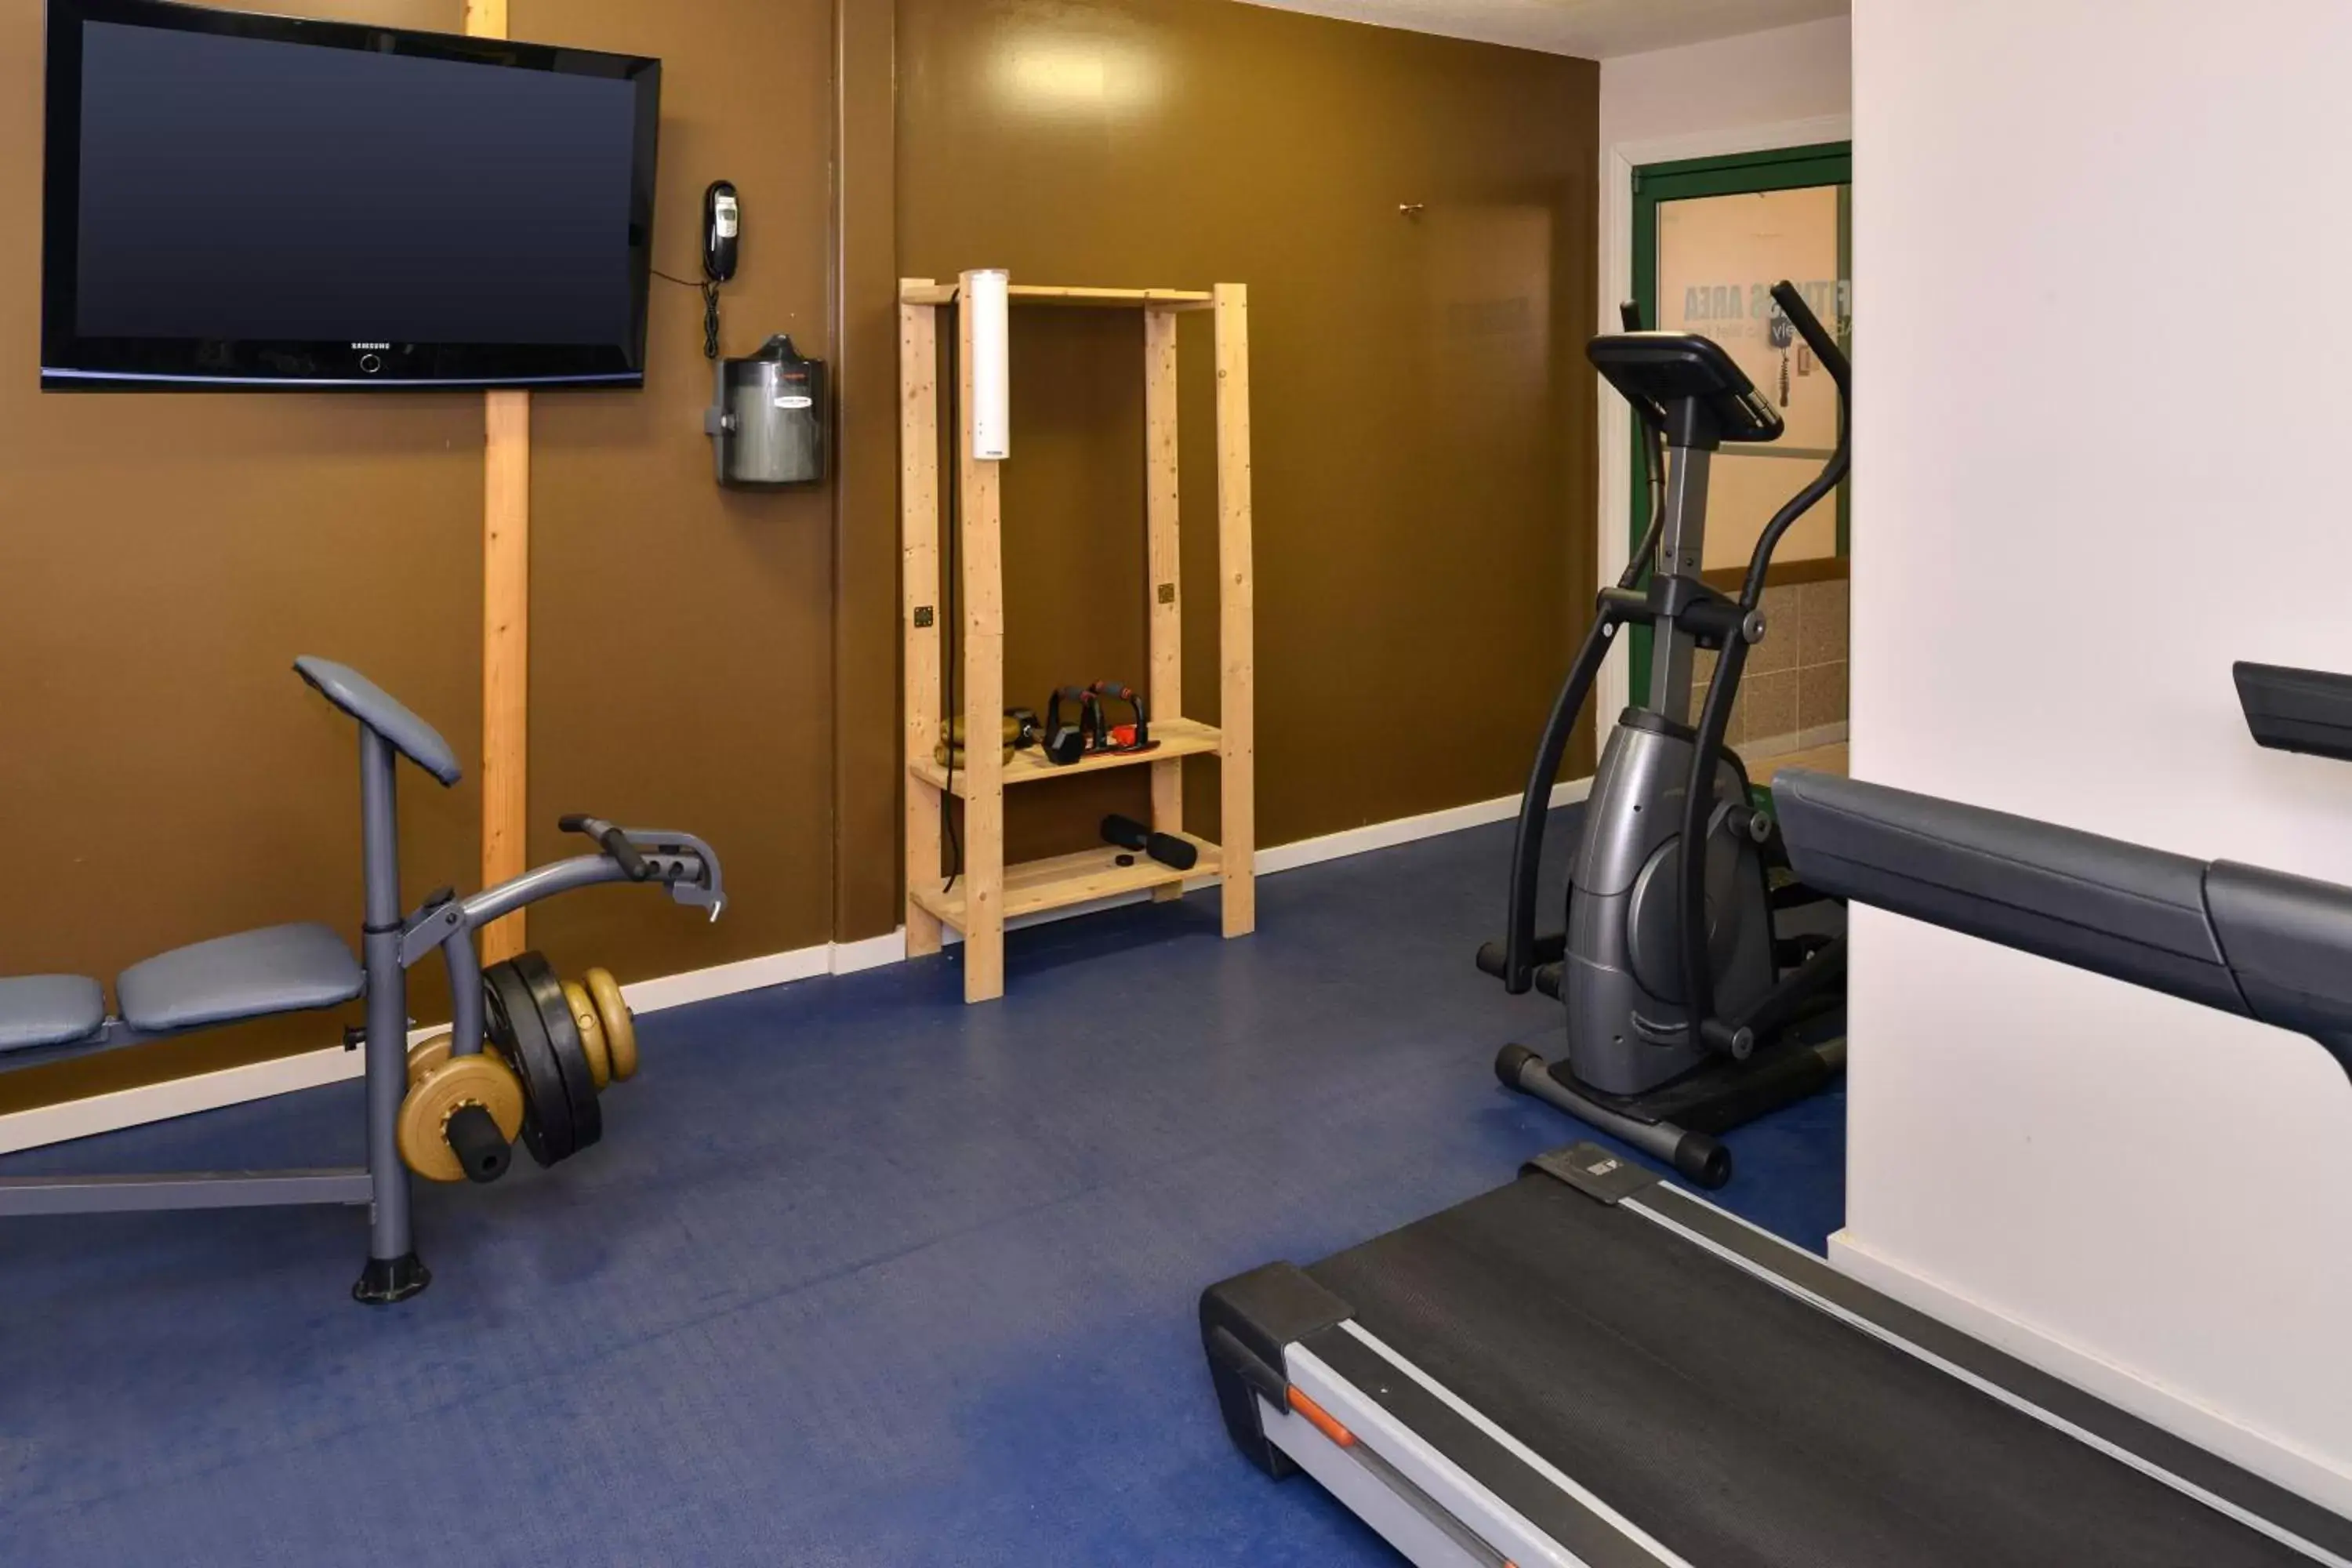 Fitness centre/facilities, Fitness Center/Facilities in Canadas Best Value Inn Valemount